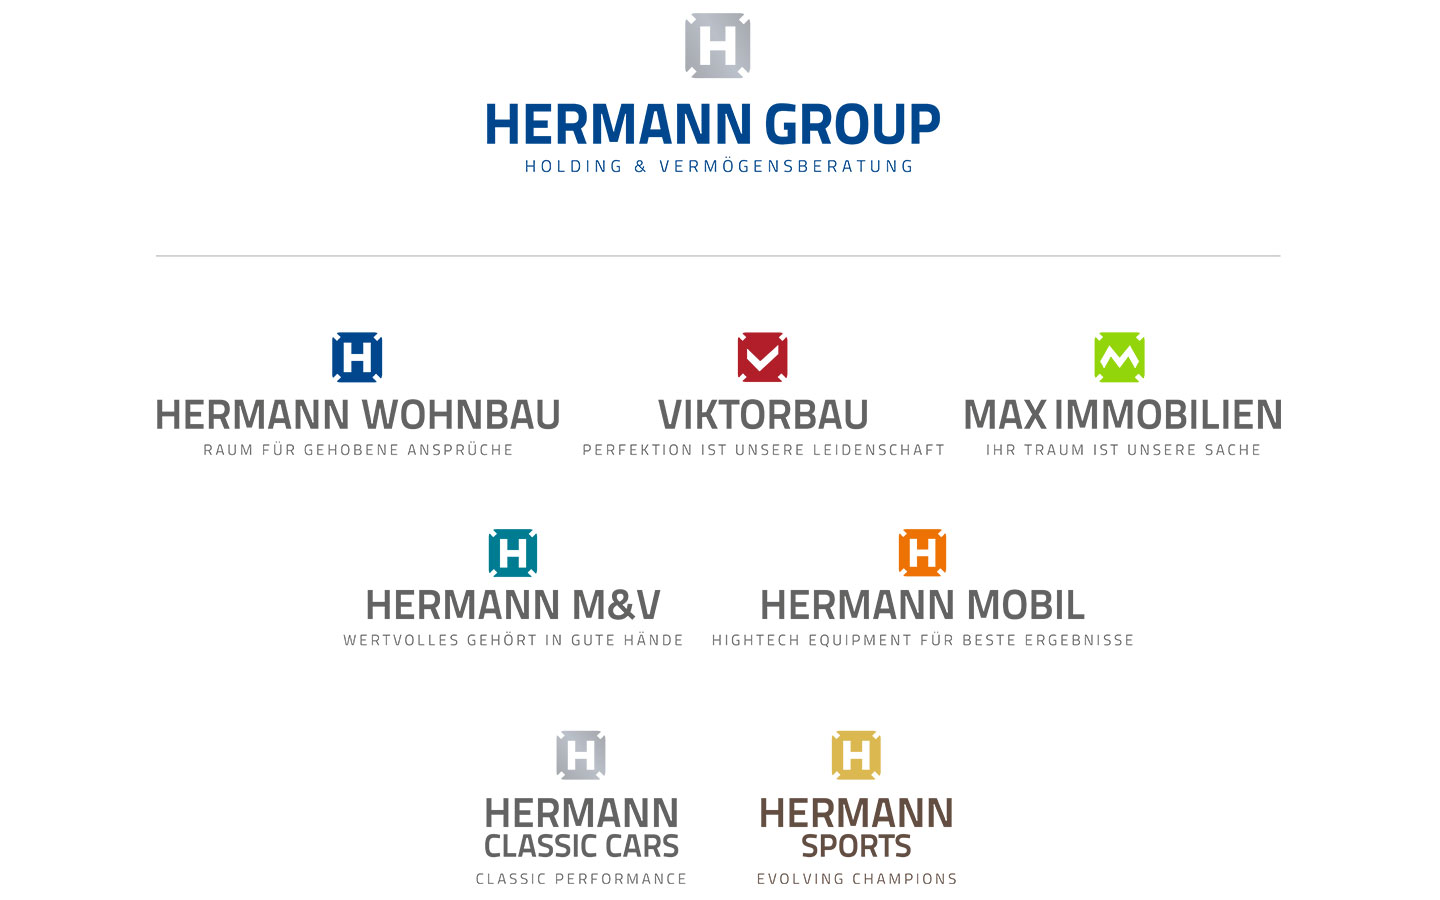 Hermann Group